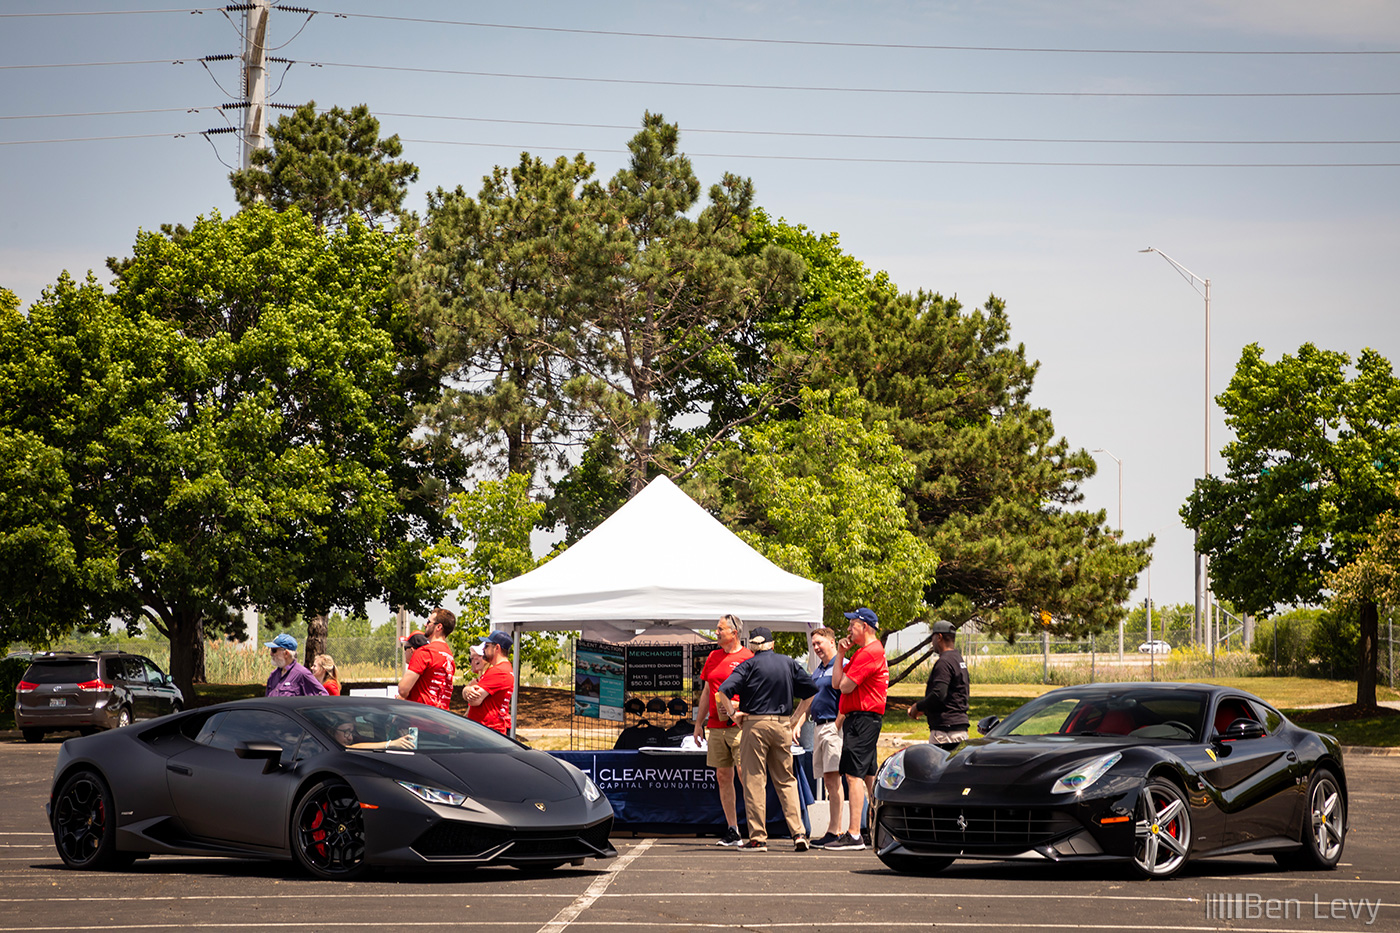 Black Lamborghini Aventador and Ferrari F12berlinetta